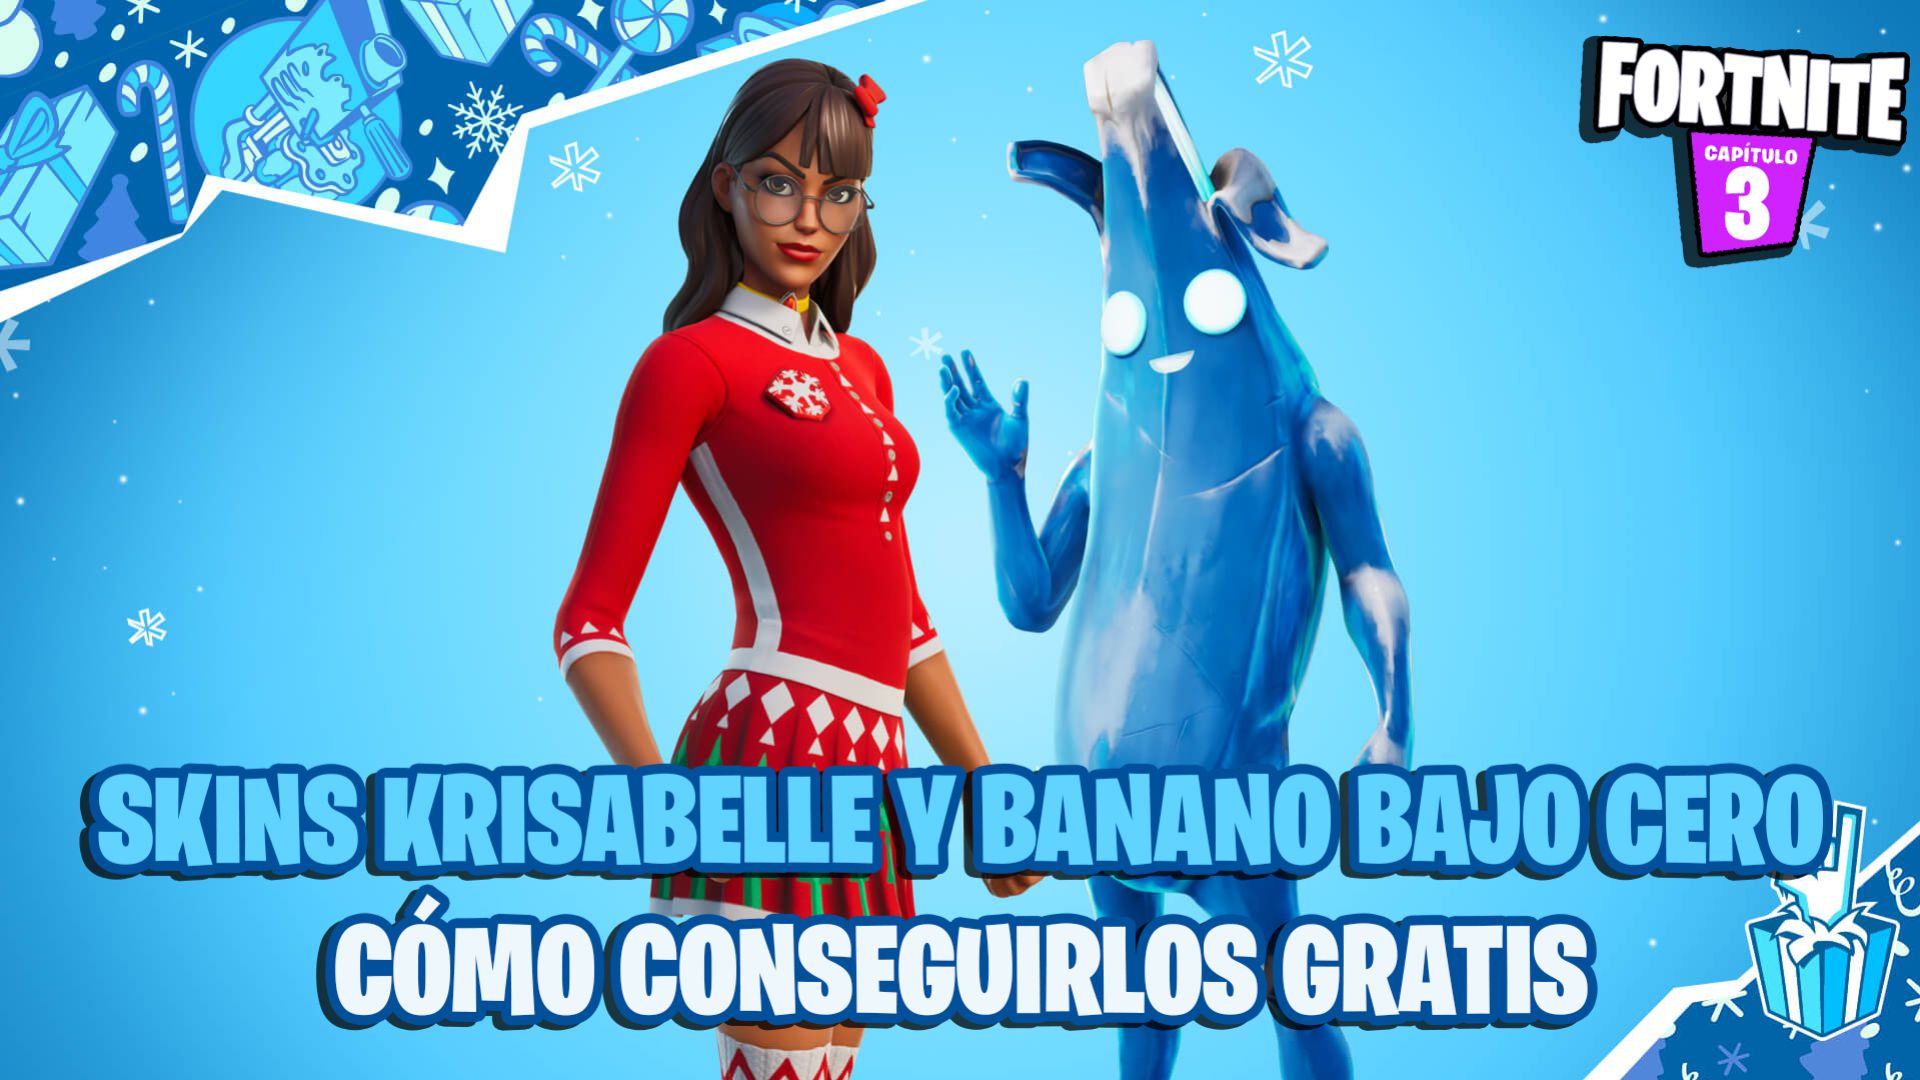 Krisabelle y Banano Bajo Cero gratis en Fortnite y todos los regalos del Festival de Invierno - MeriStation